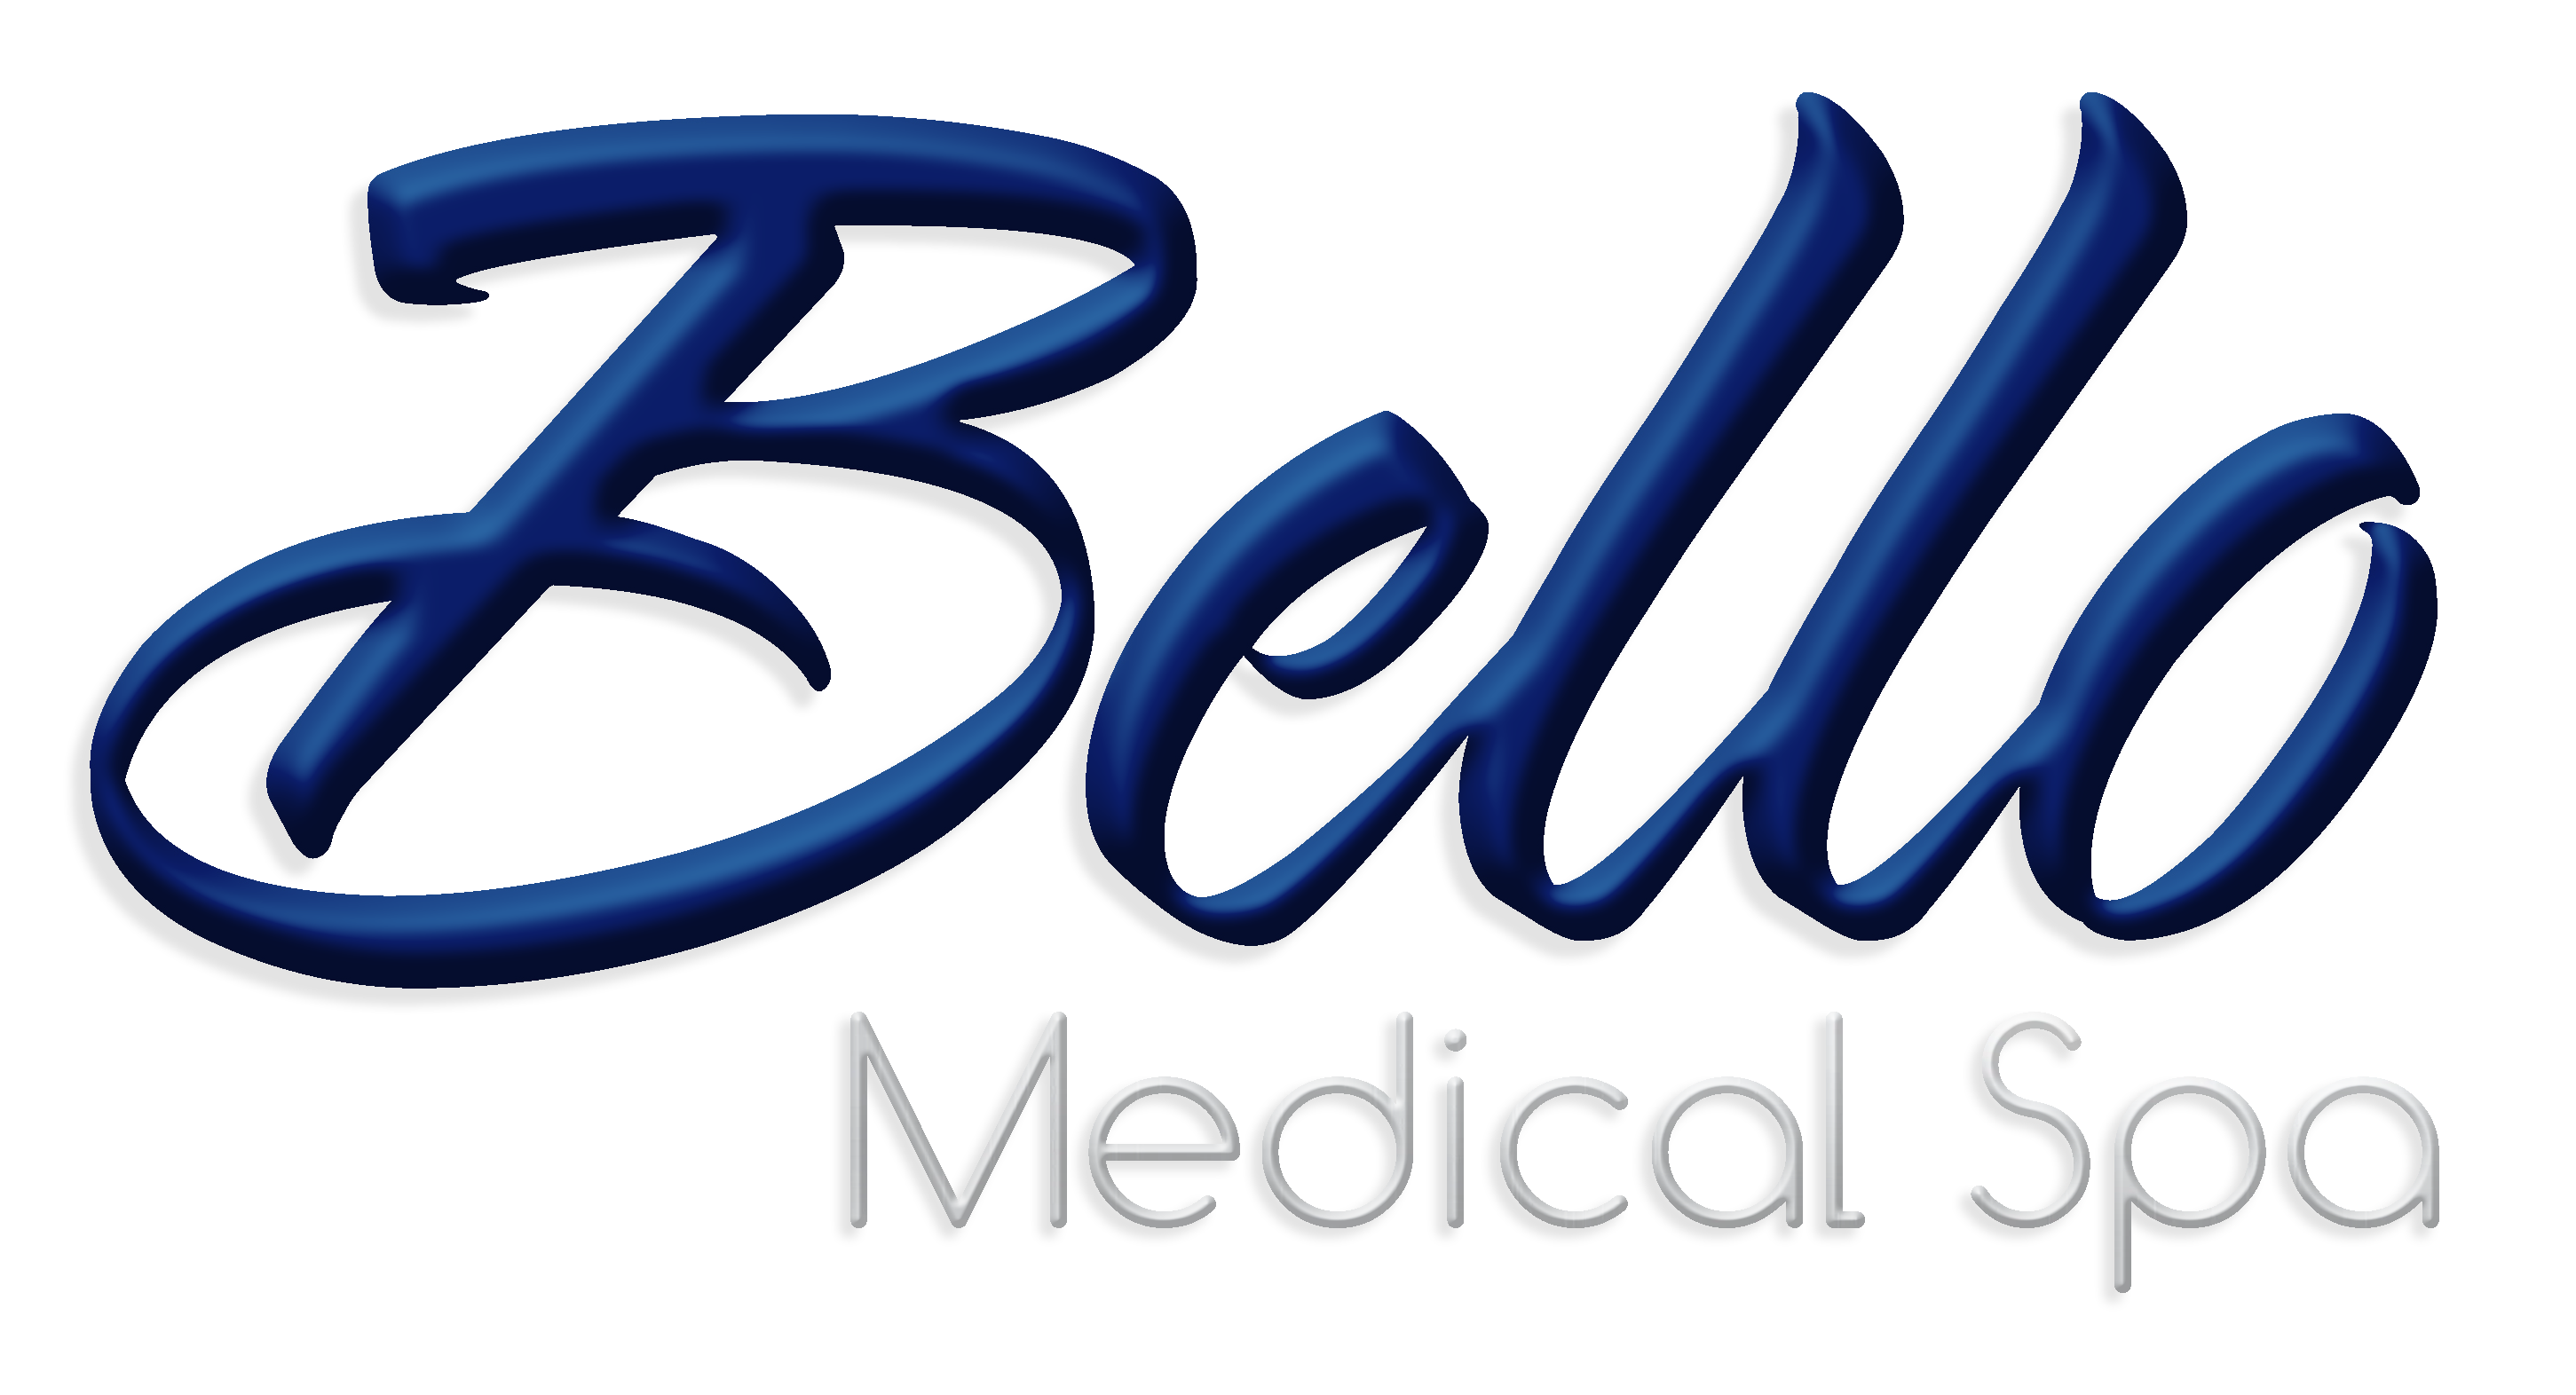 Bello Medical Spa